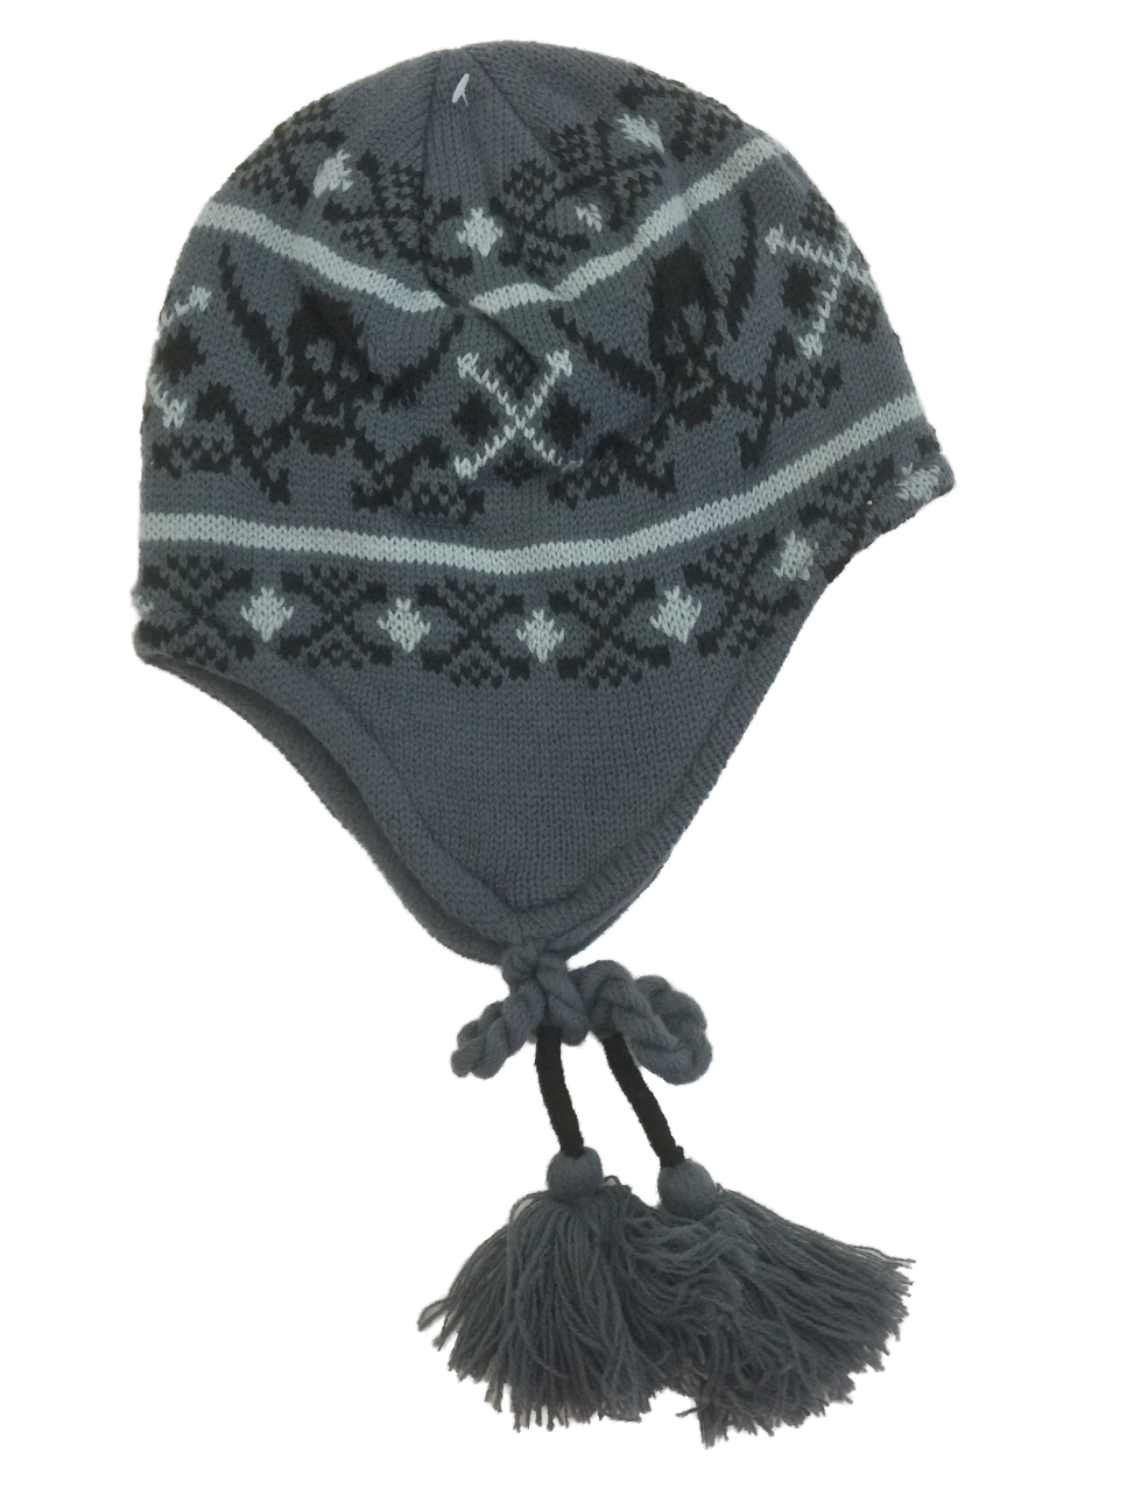 Ben Berger Boys Gray Skull Peruvian Beanie Fleece Lined Winter Hat